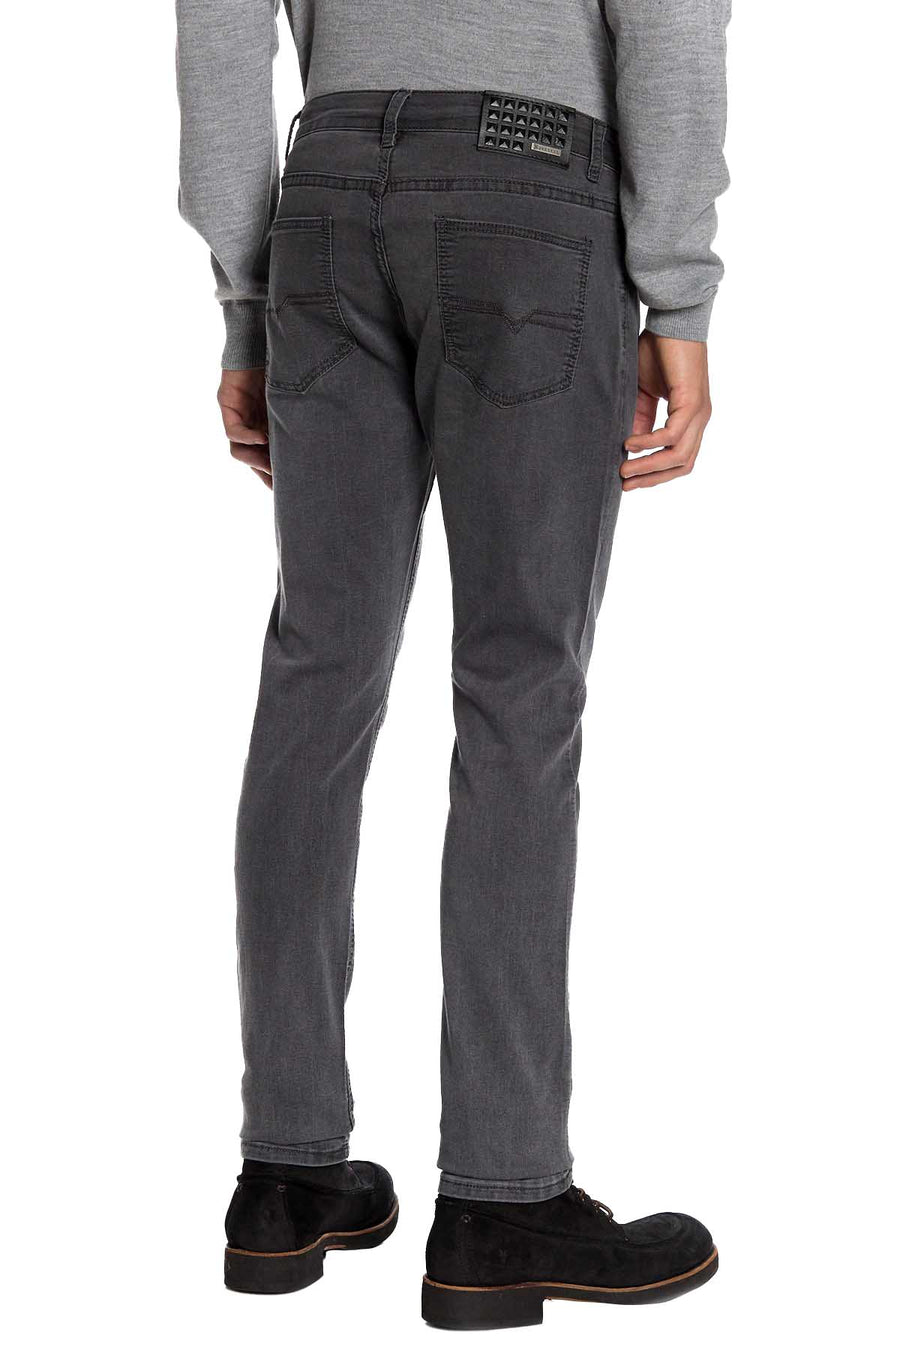 Recess Jeans Dark Grey Solid Stretch Slim Jean – CheapUndies